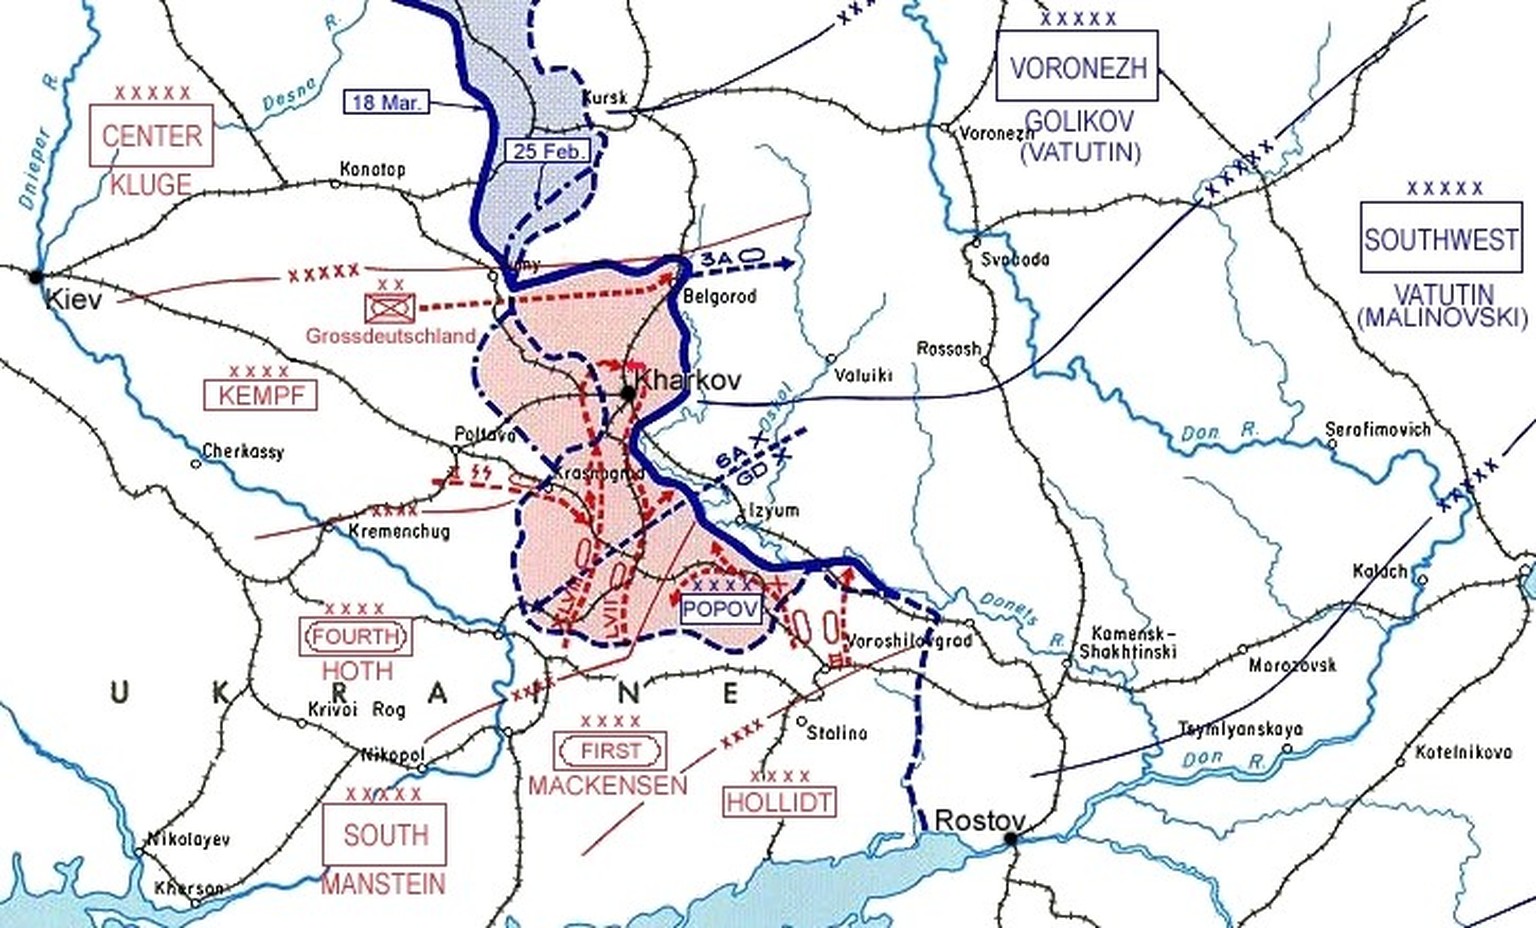 Karte der 3. Schlacht um Charkow
https://de.wikipedia.org/wiki/Schlacht_bei_Charkow_(1943)#/media/Datei:Third_Battle_of_Kharkov_sector.png